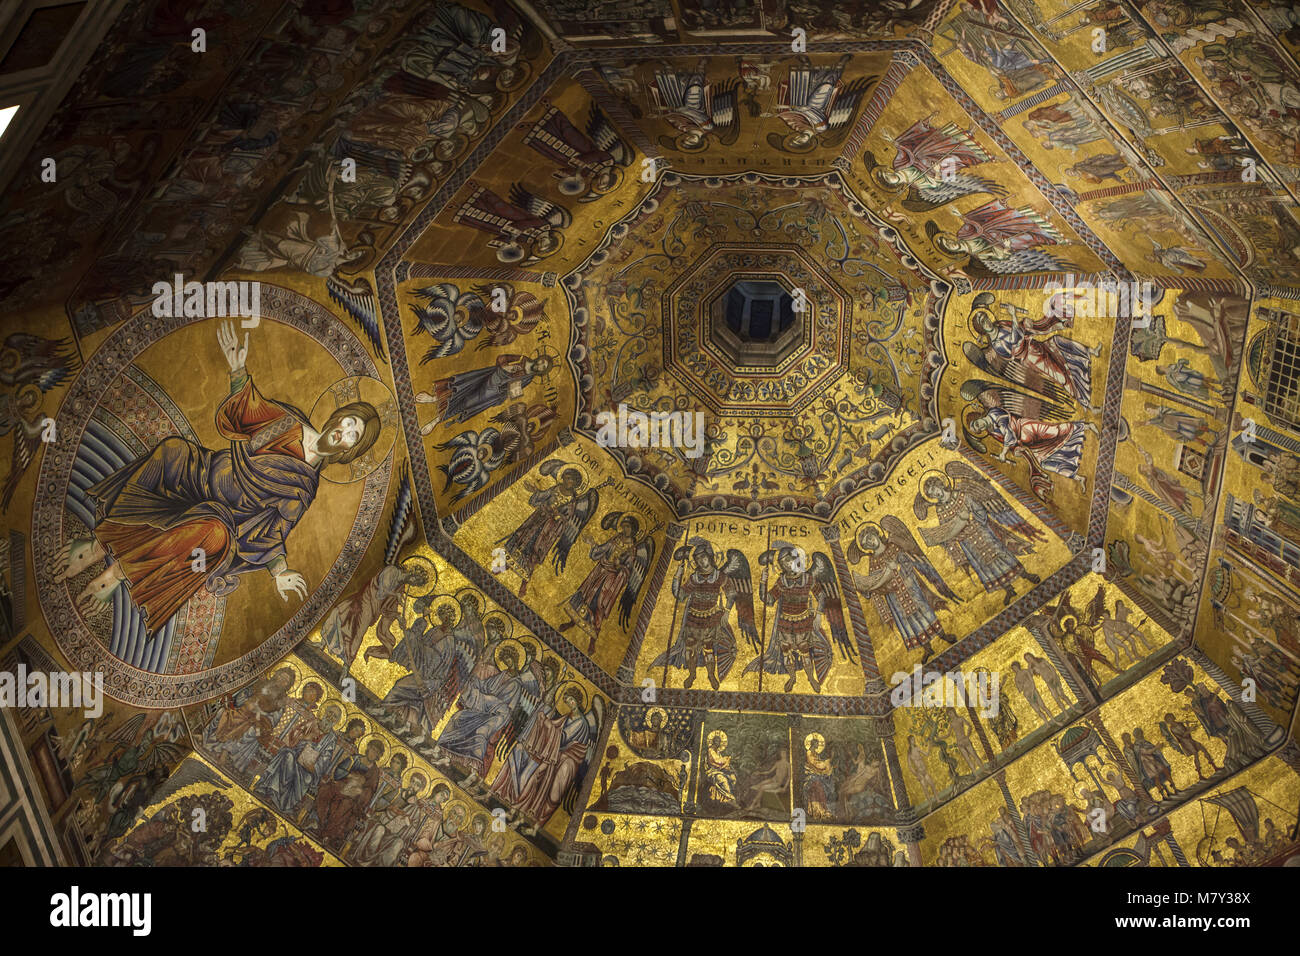 Chöre der Engel und Jesus Christus dargestellt in der mittelalterlichen Mosaiken aus dem 13. Jahrhundert innerhalb der achteckigen Kuppel in der Battistero di San Giovanni (Florenz Baptisterium) in Florenz, Toskana, Italien. Stockfoto